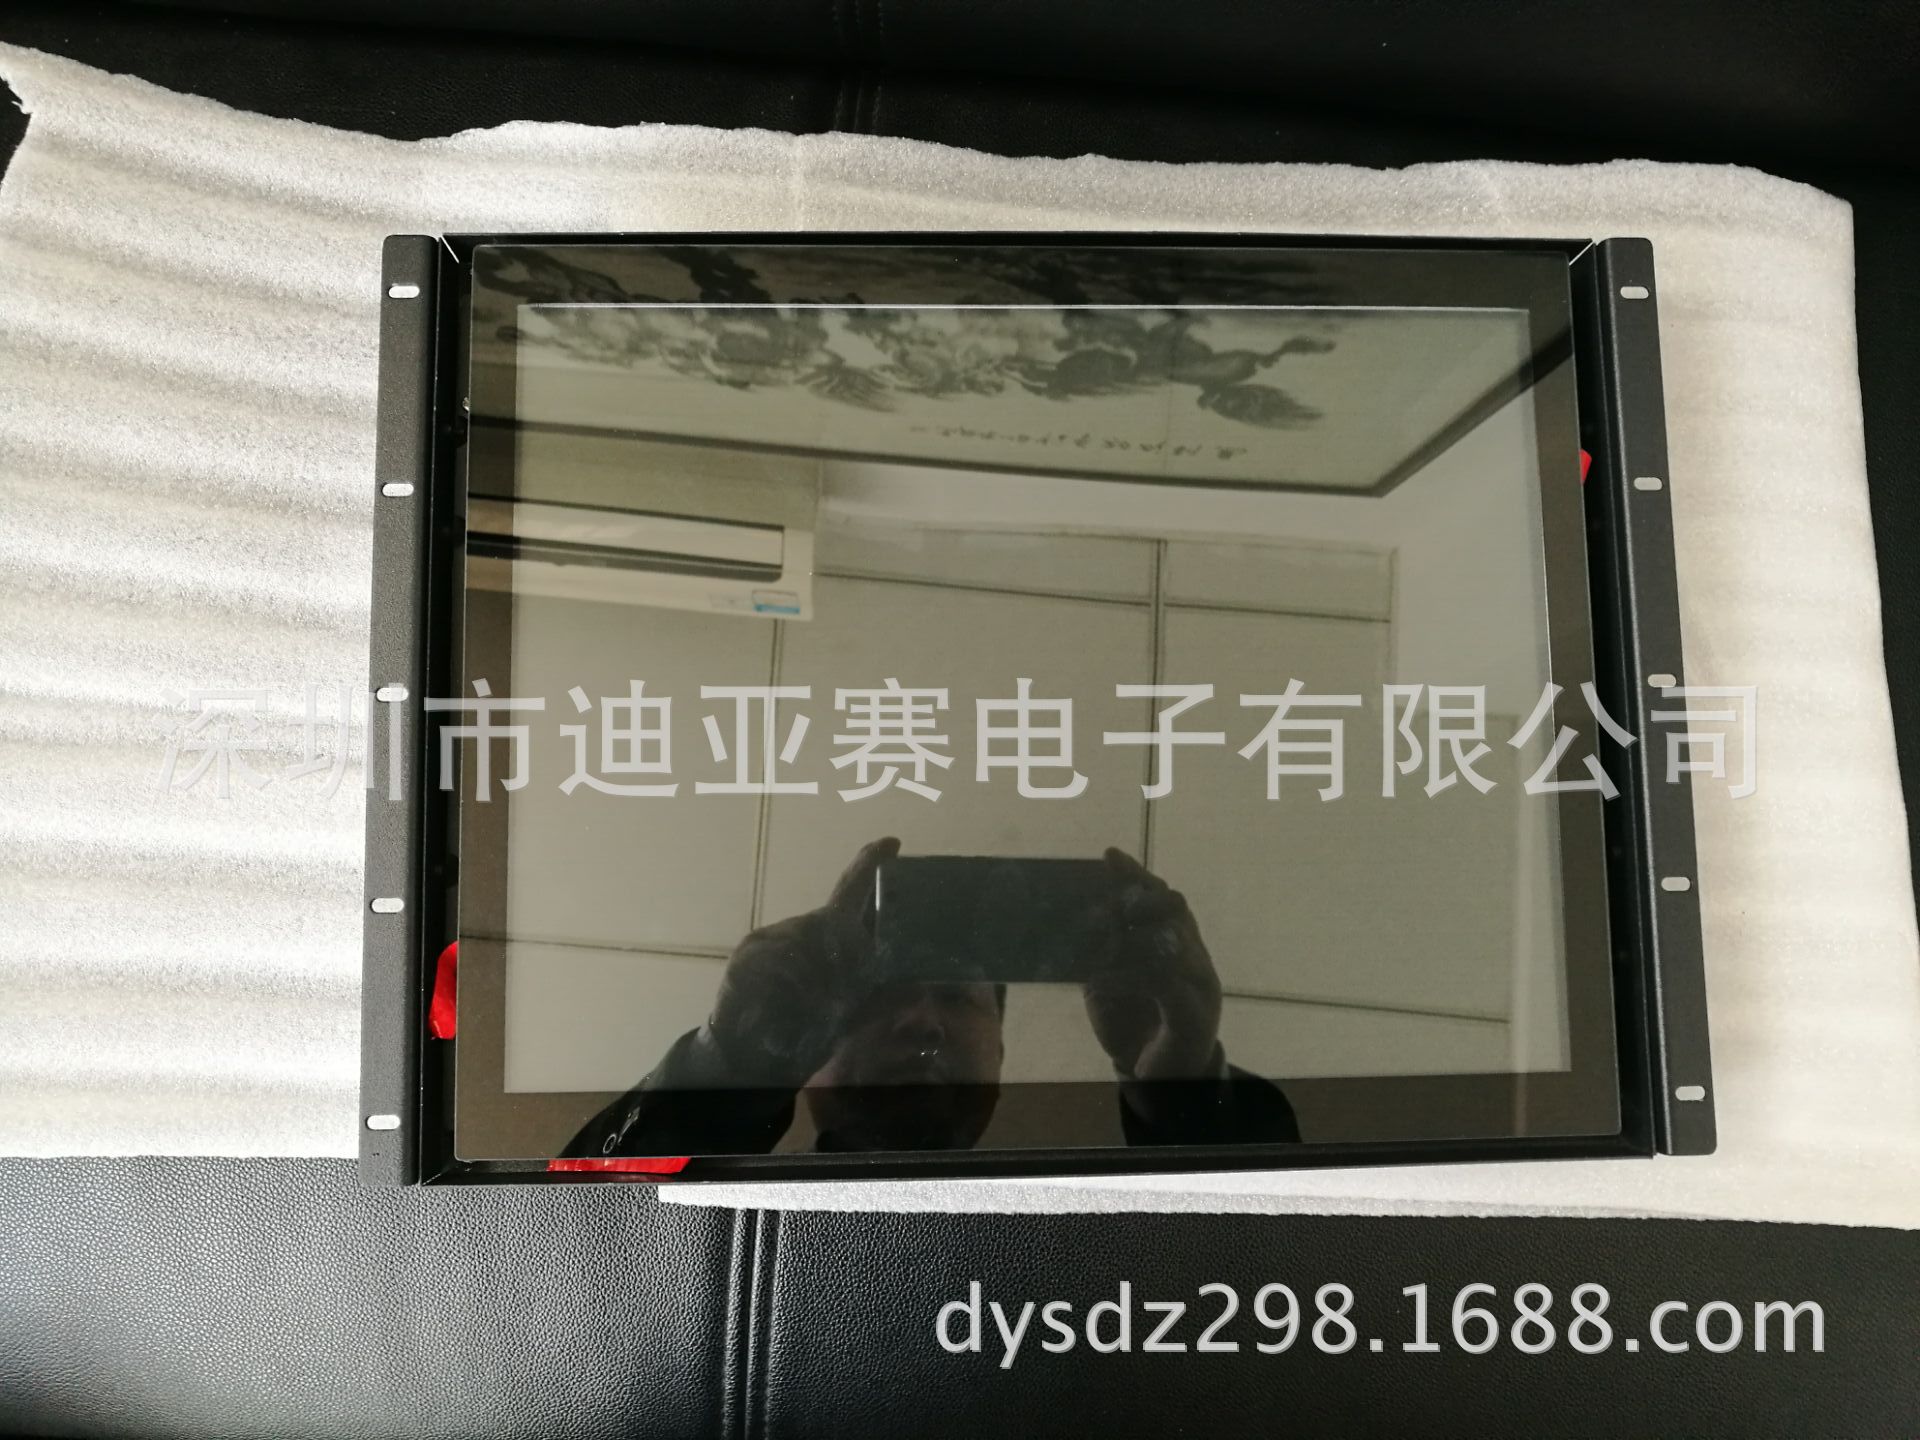 生产工业显示器 生产嵌入式显示器 生产机柜显示器 生产触控屏示例图12